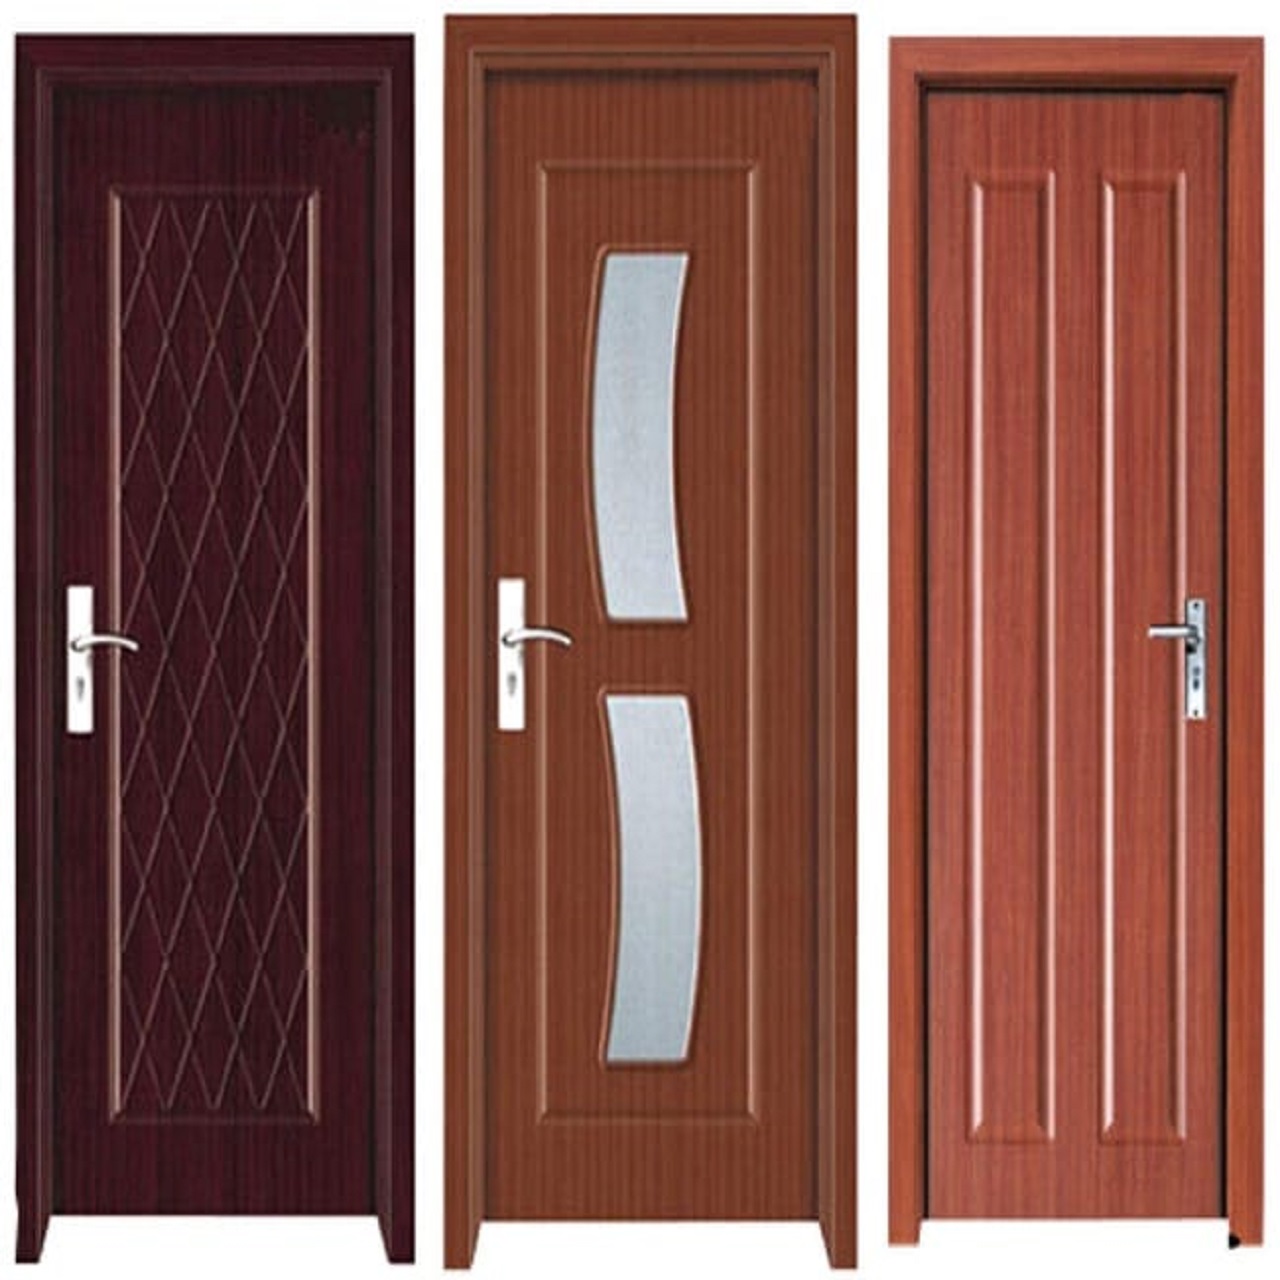 modern pvc door designs